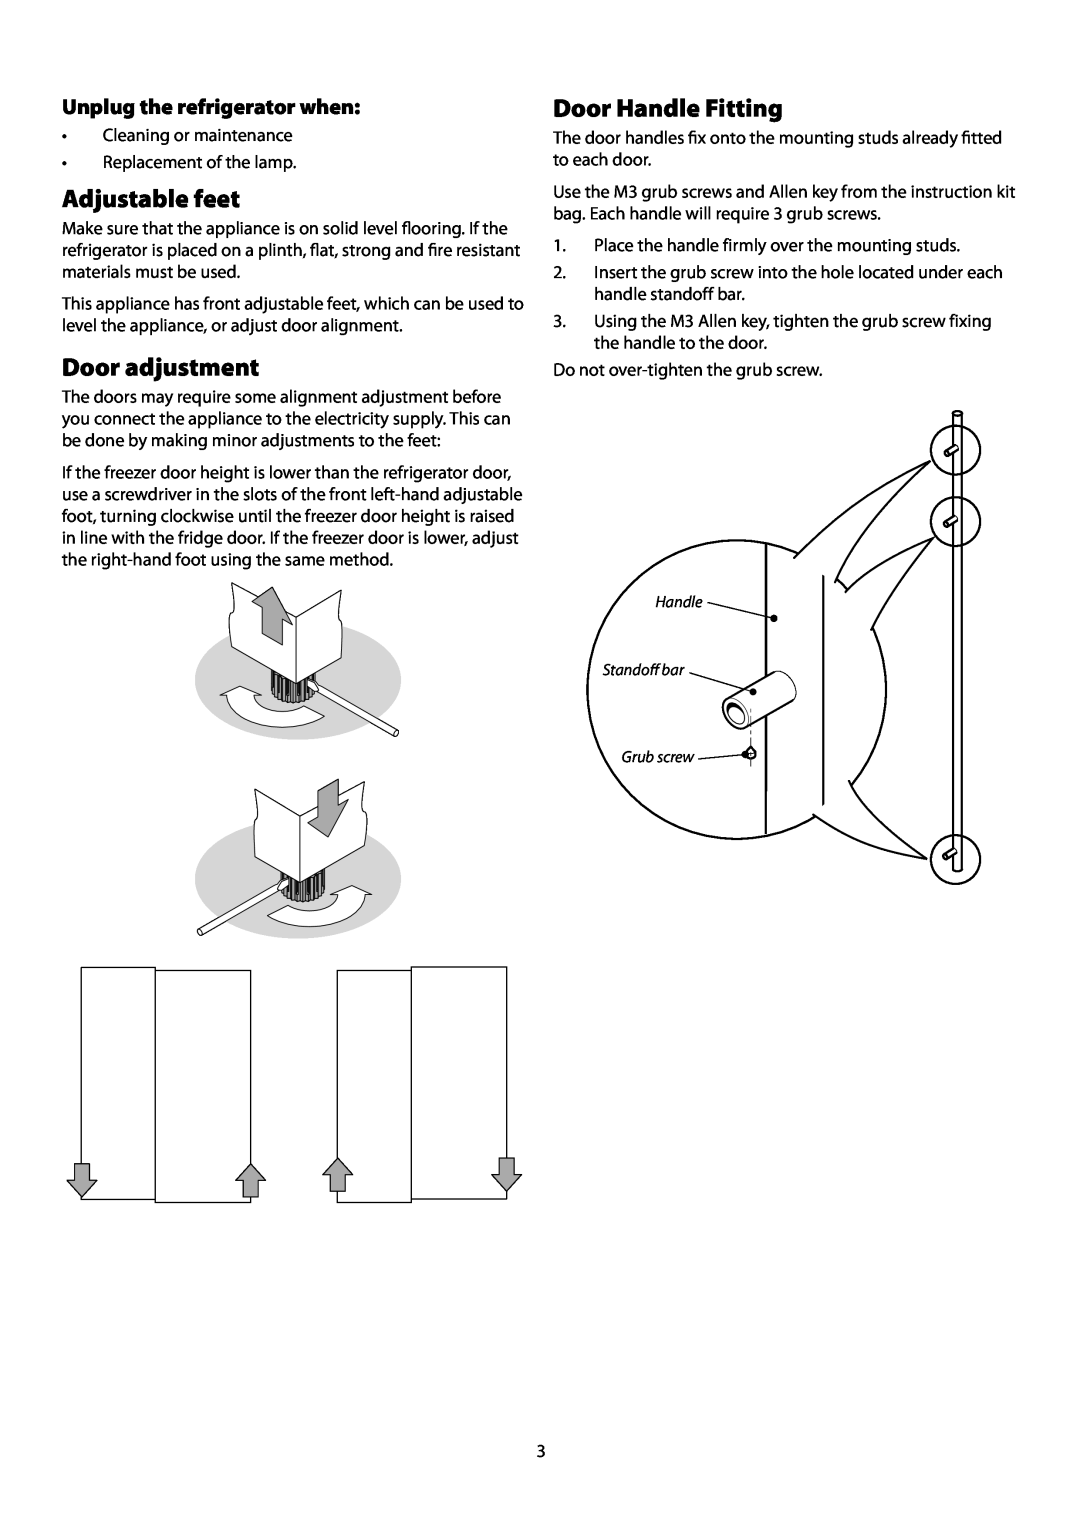 Rangemaster SxS 661 manual Adjustable feet, Door adjustment, Door Handle Fitting, Unplug the refrigerator when 